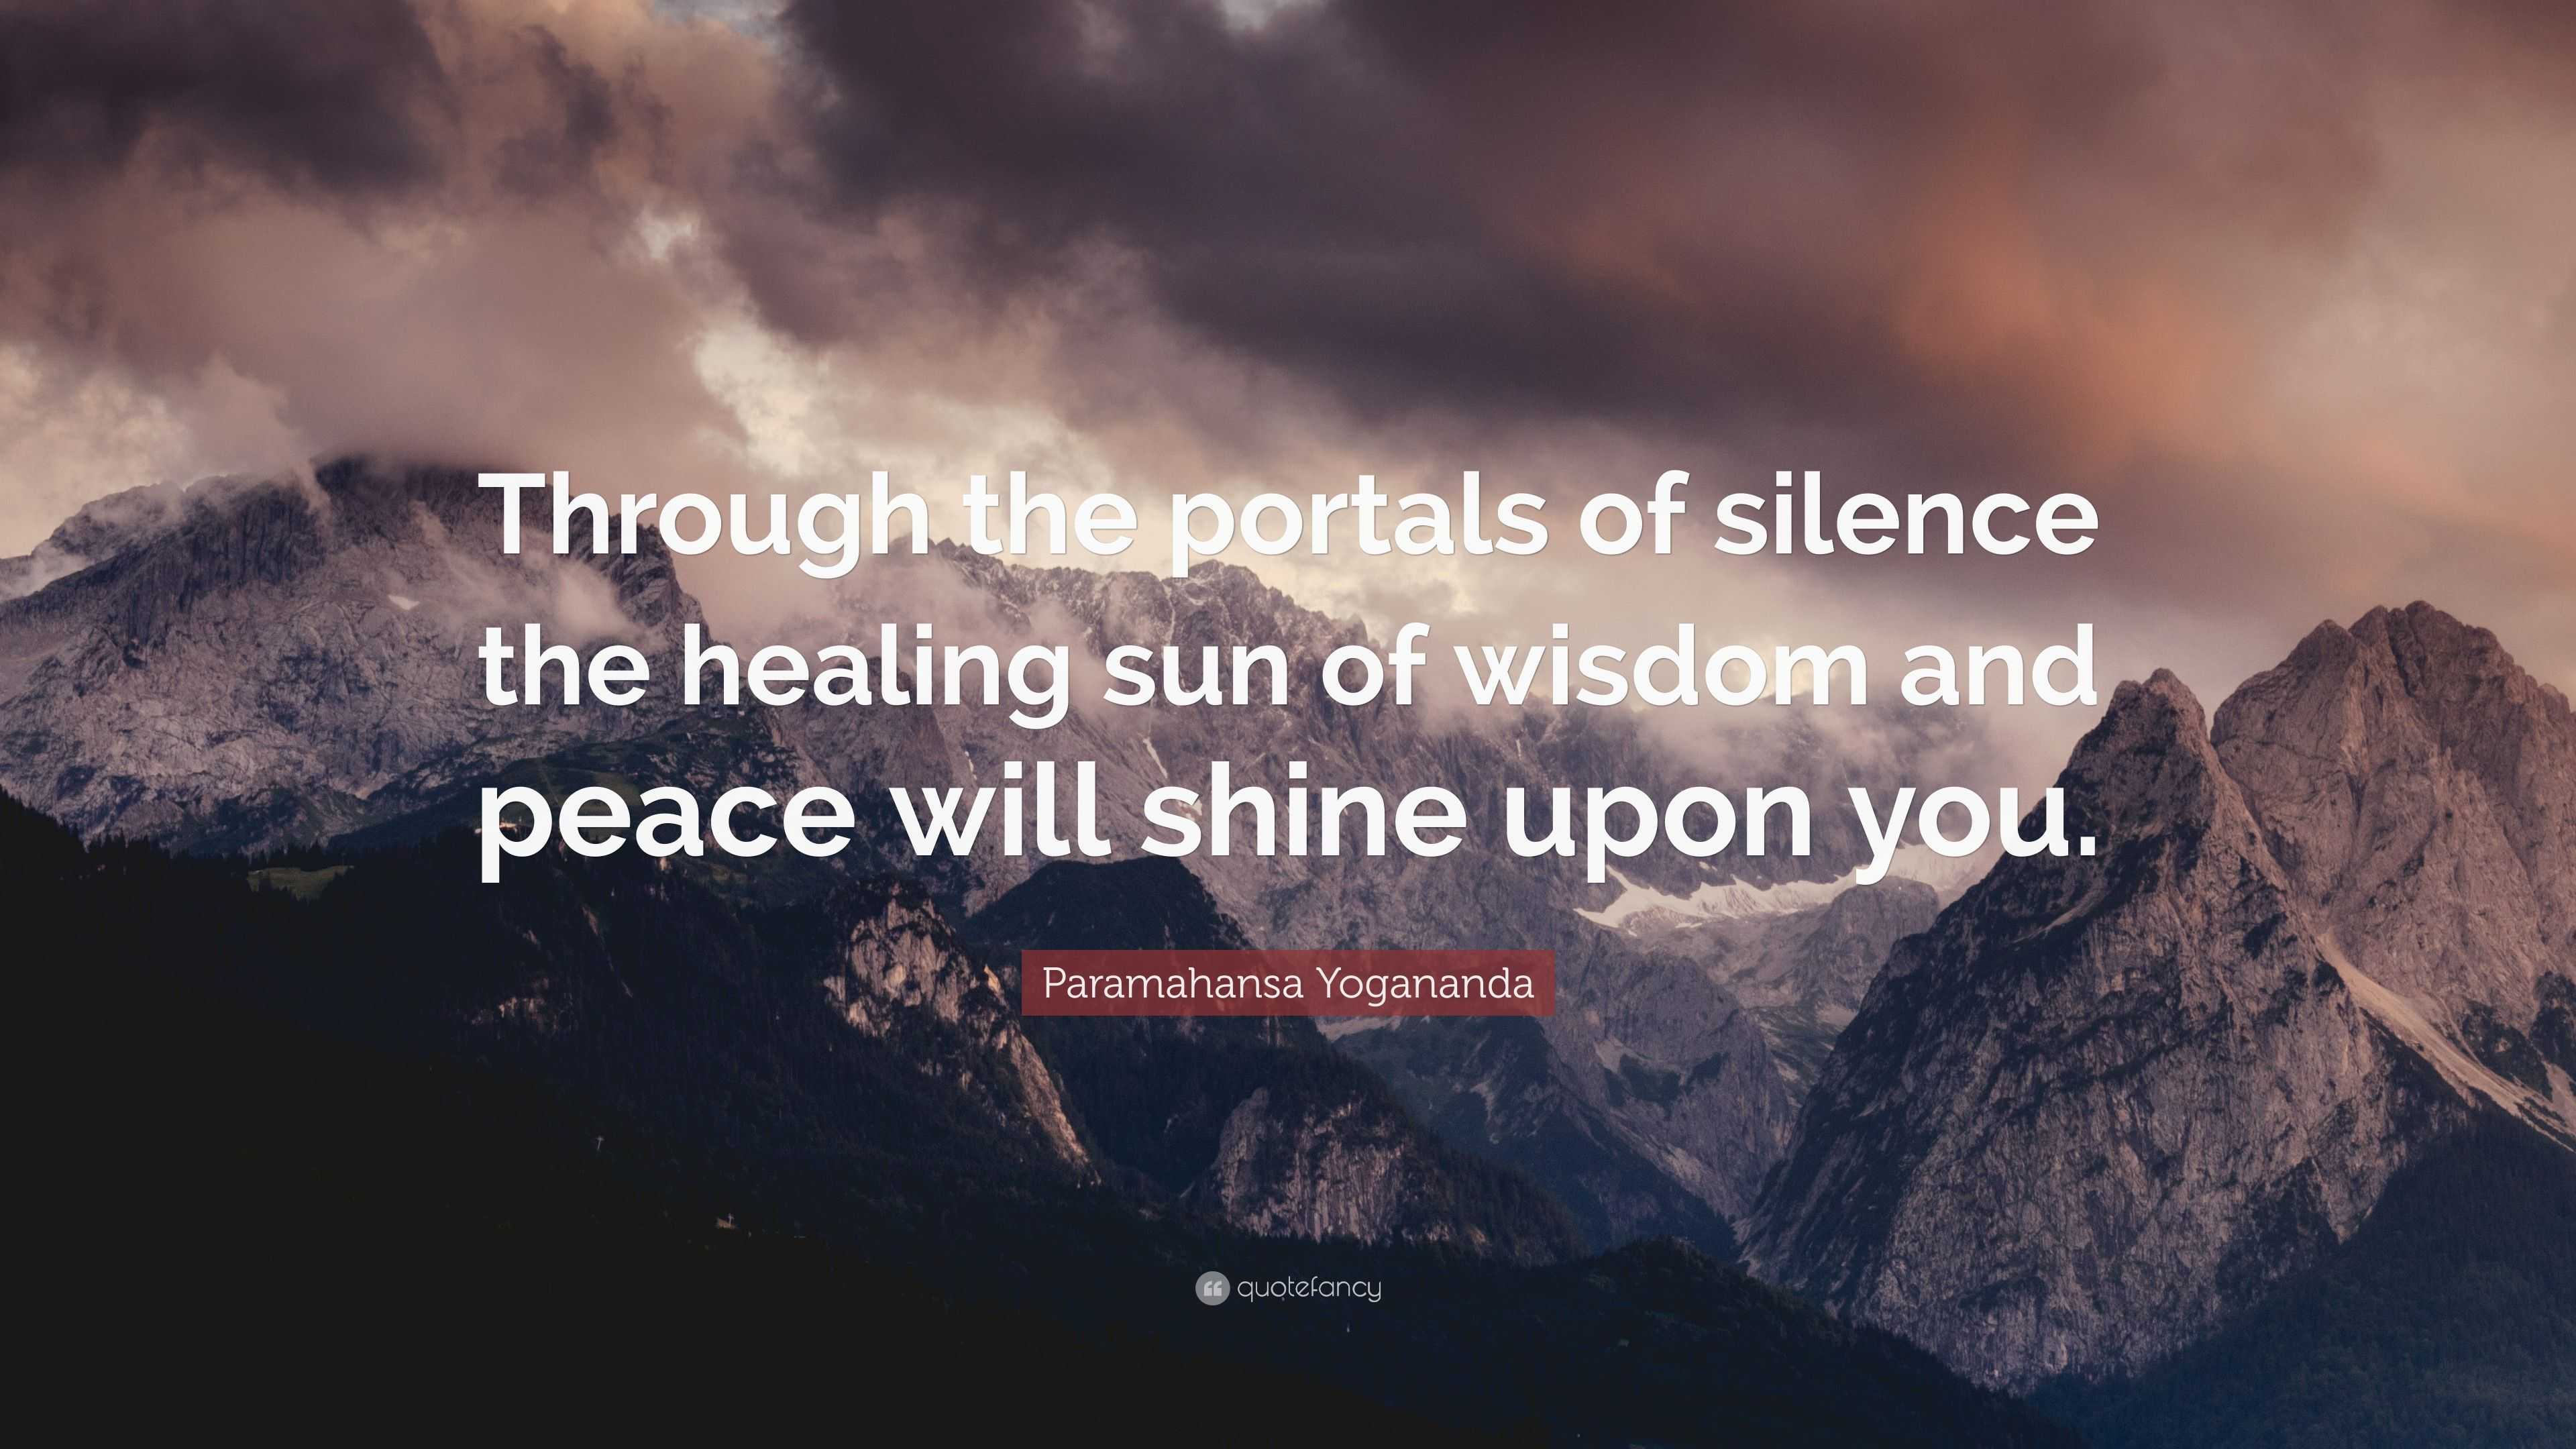 Paramahansa Yogananda Quote: “Through the portals of silence the ...